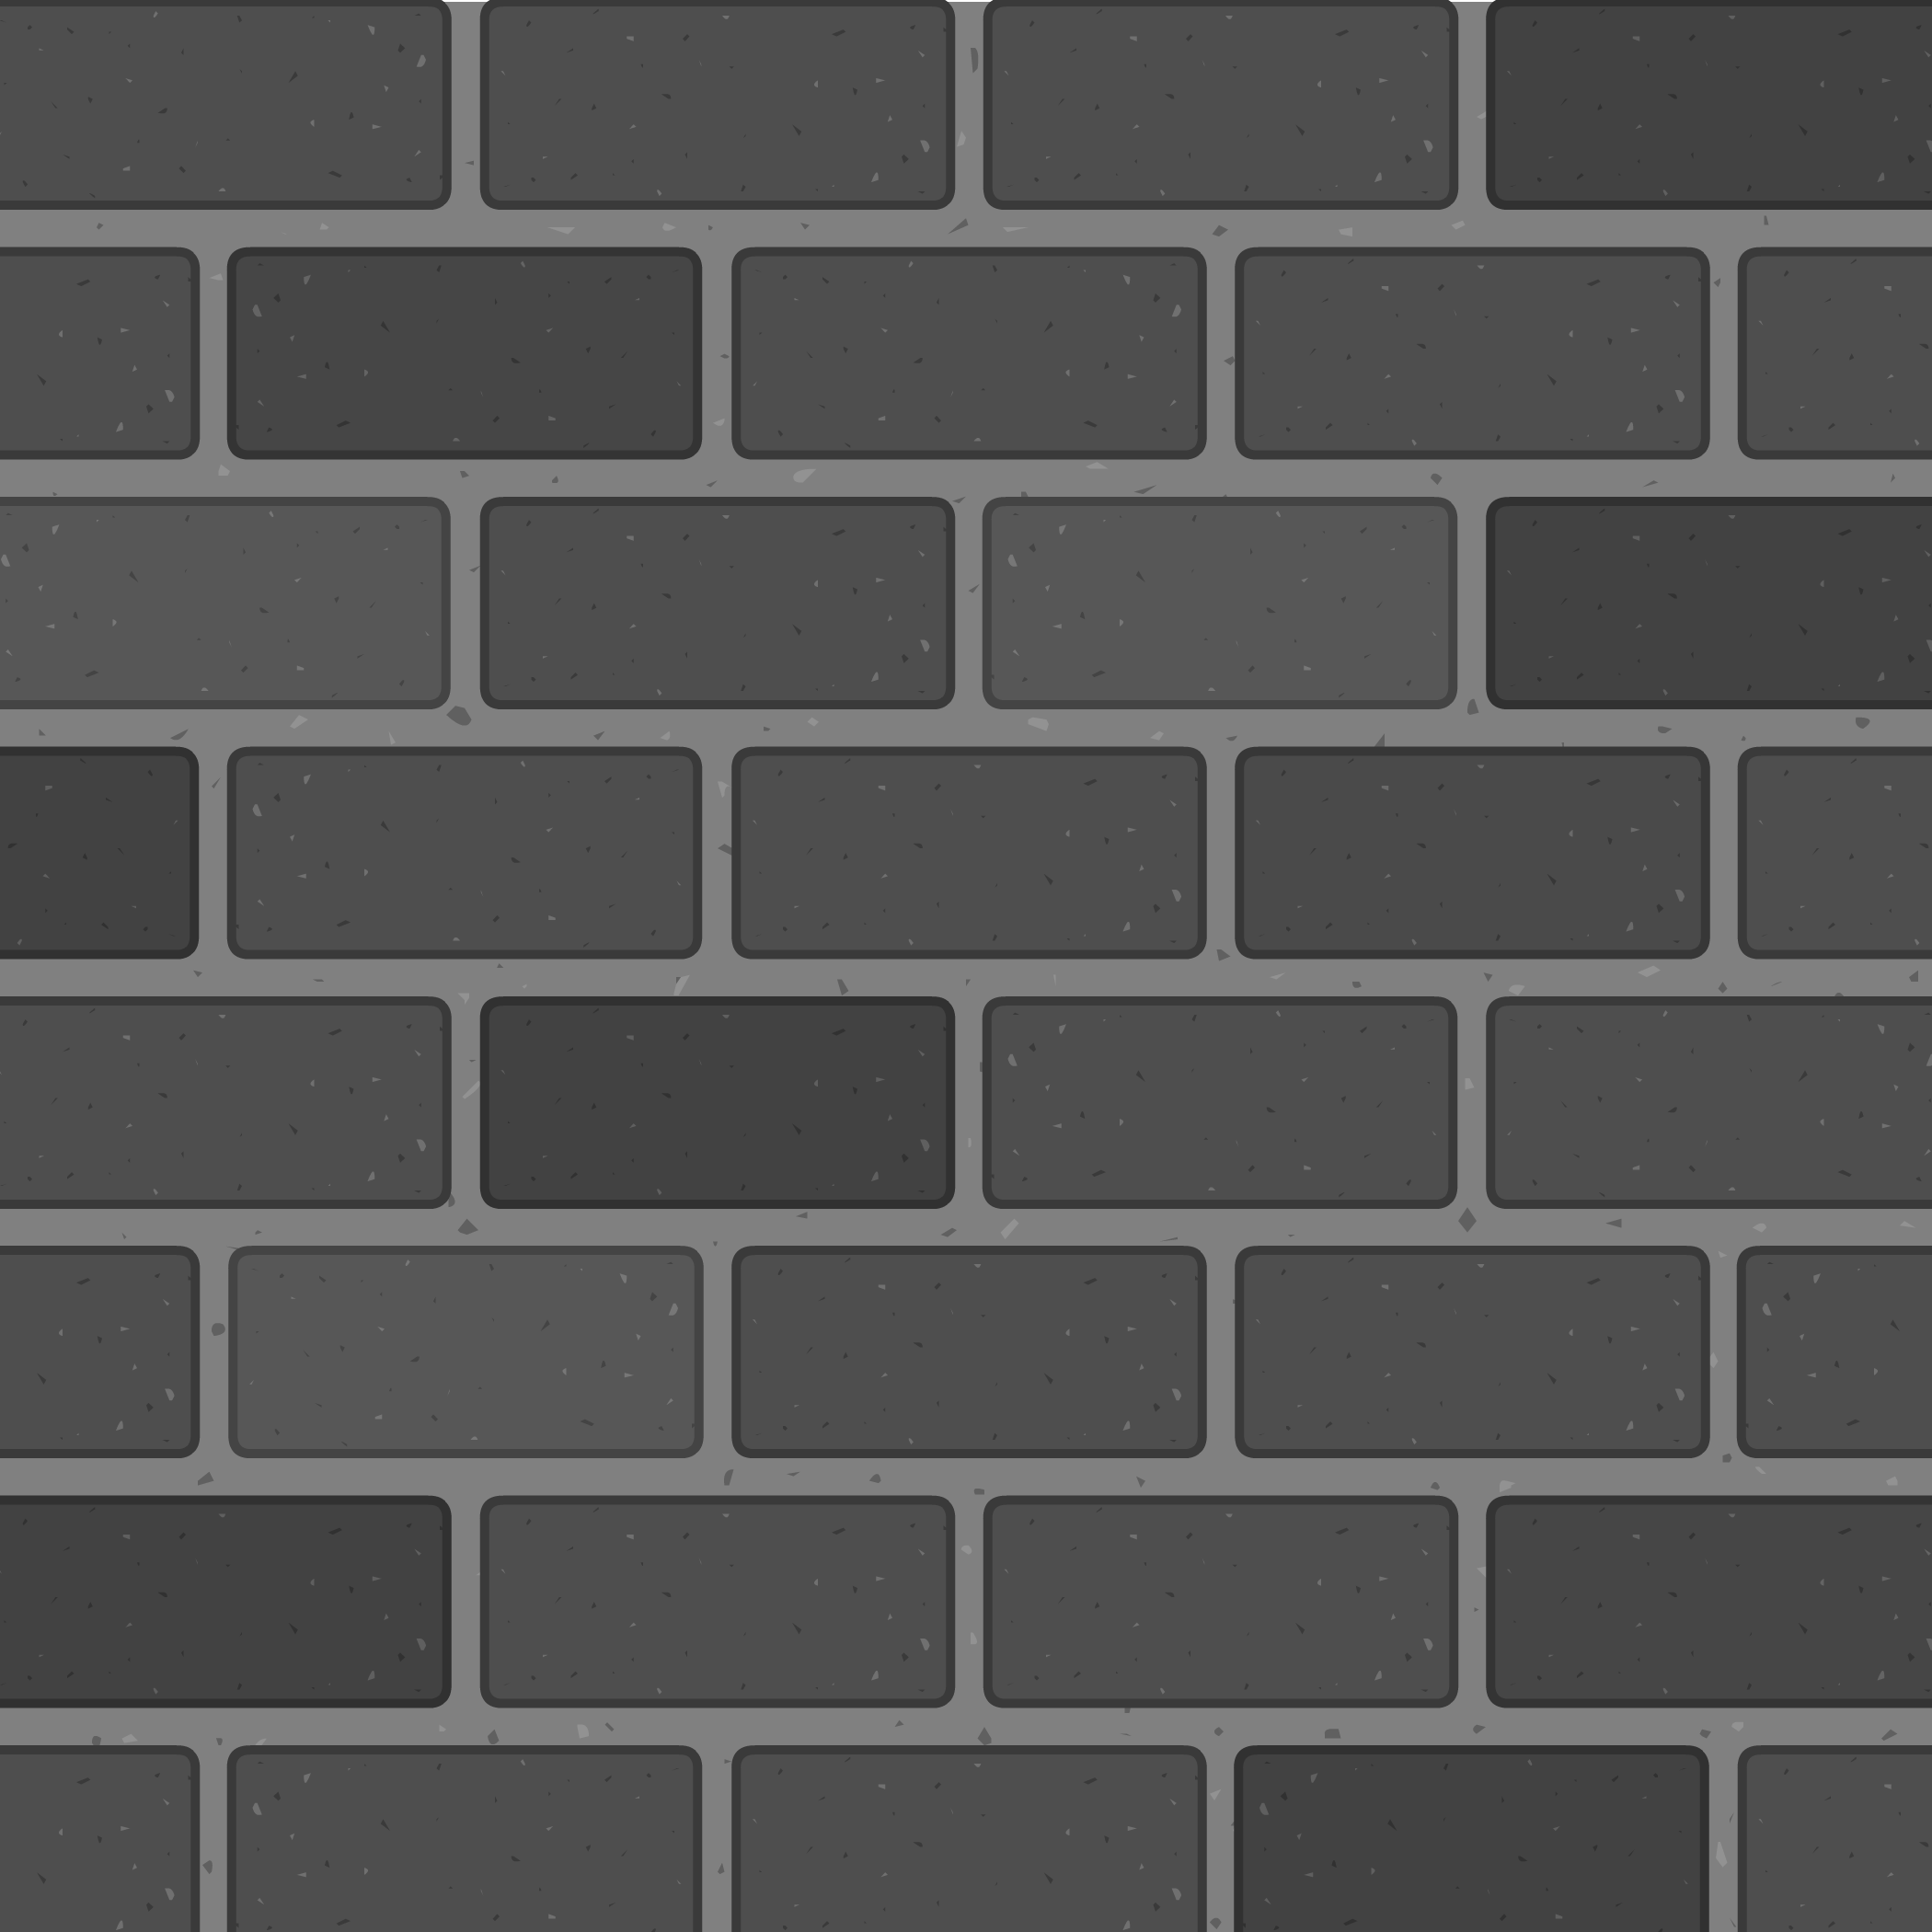 Black and White Brick Background | Club Penguin Rewritten Wiki | Fandom